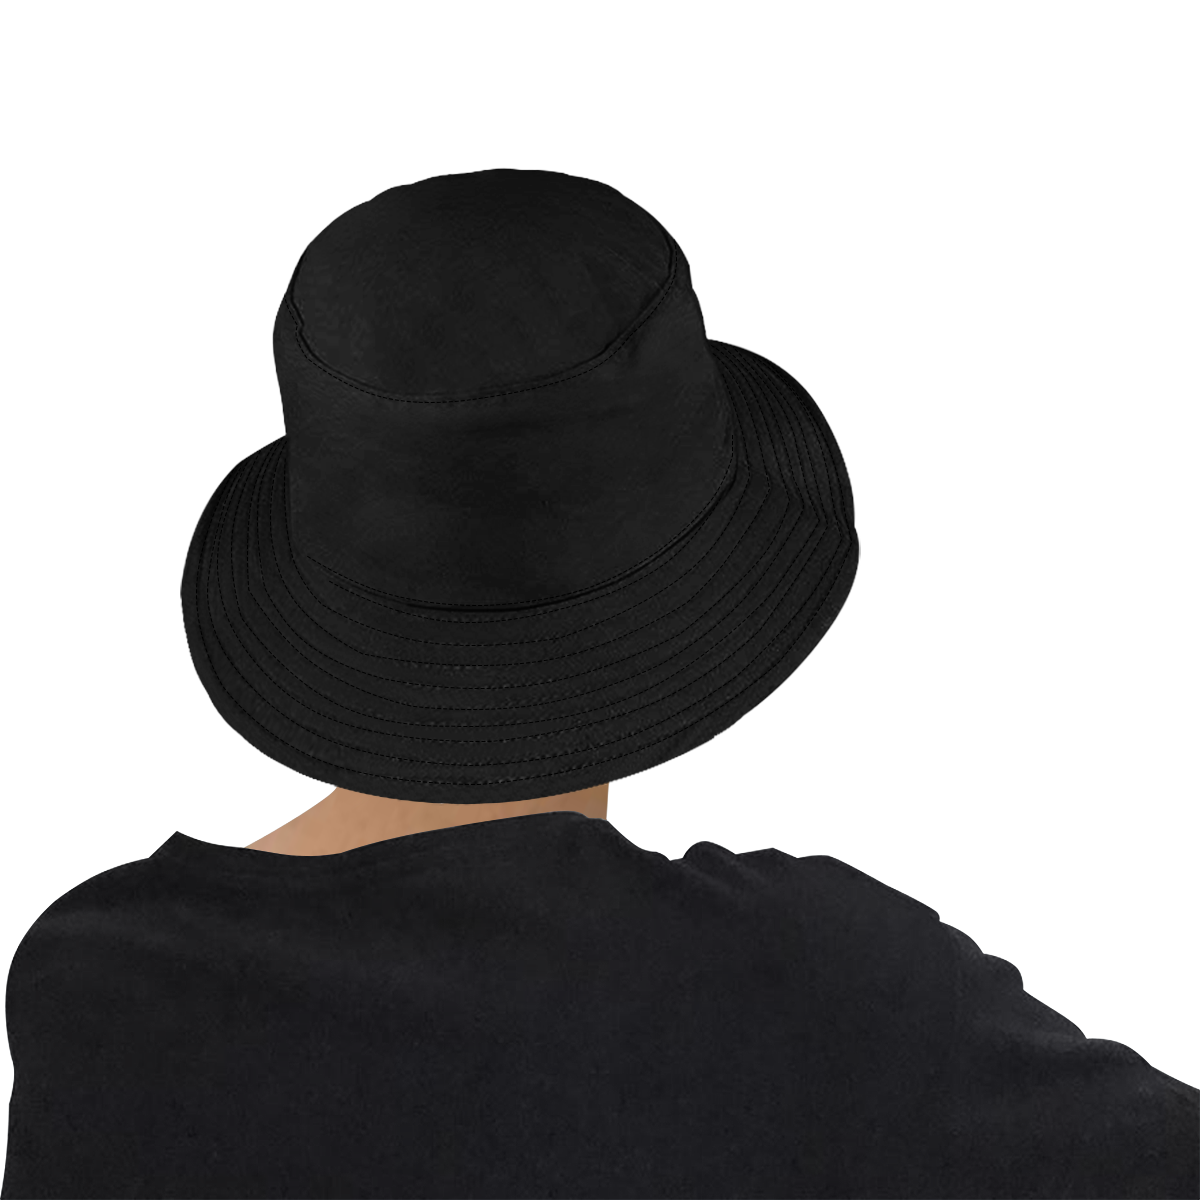 Padre Fresco Black All Over Print Bucket Hat for Men